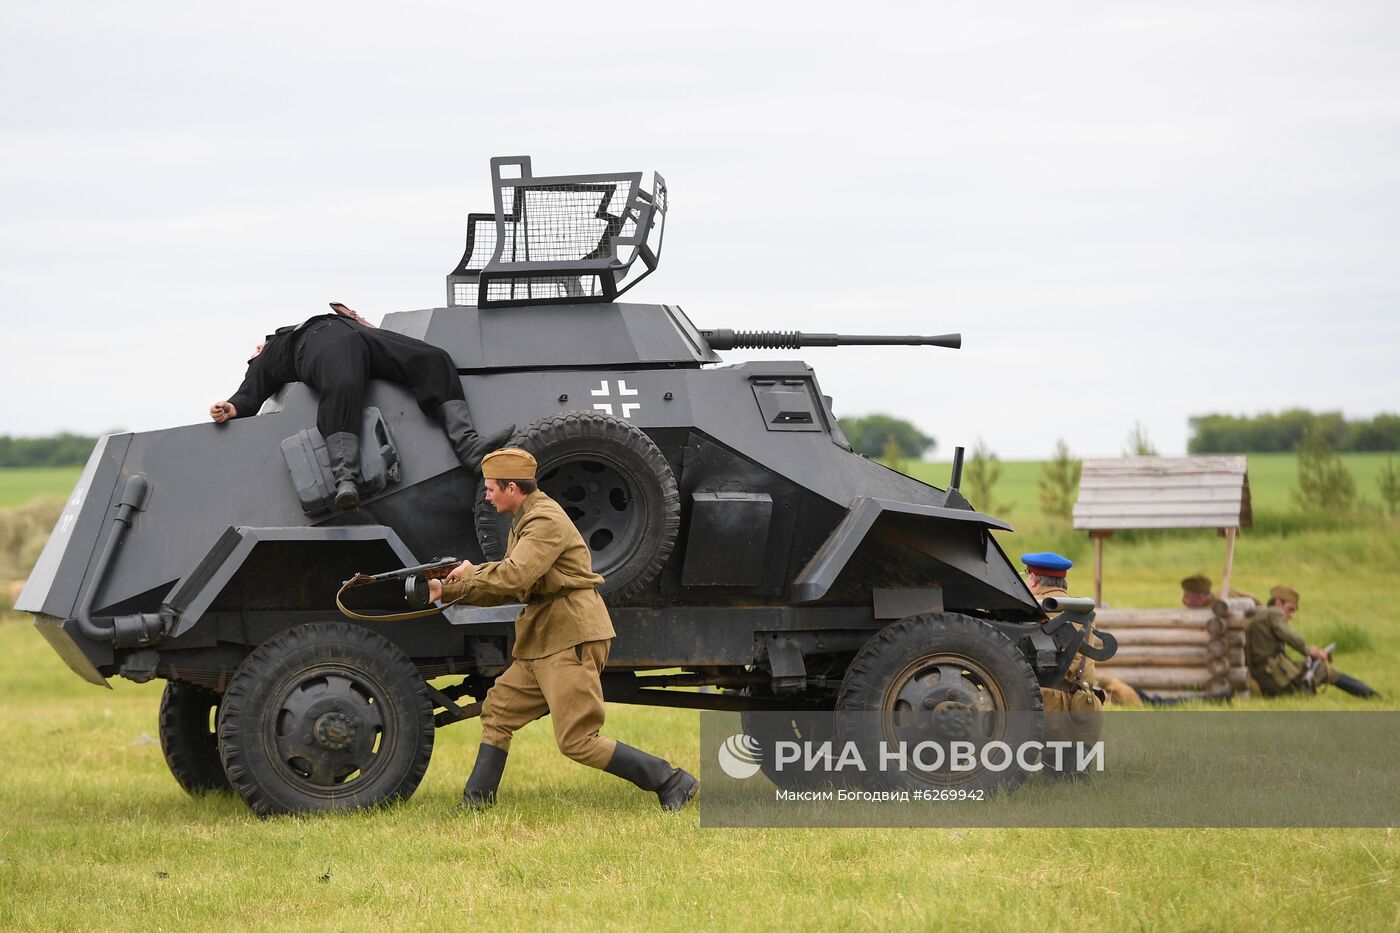 Фестиваль военно-исторической реконструкции в Татарстане 